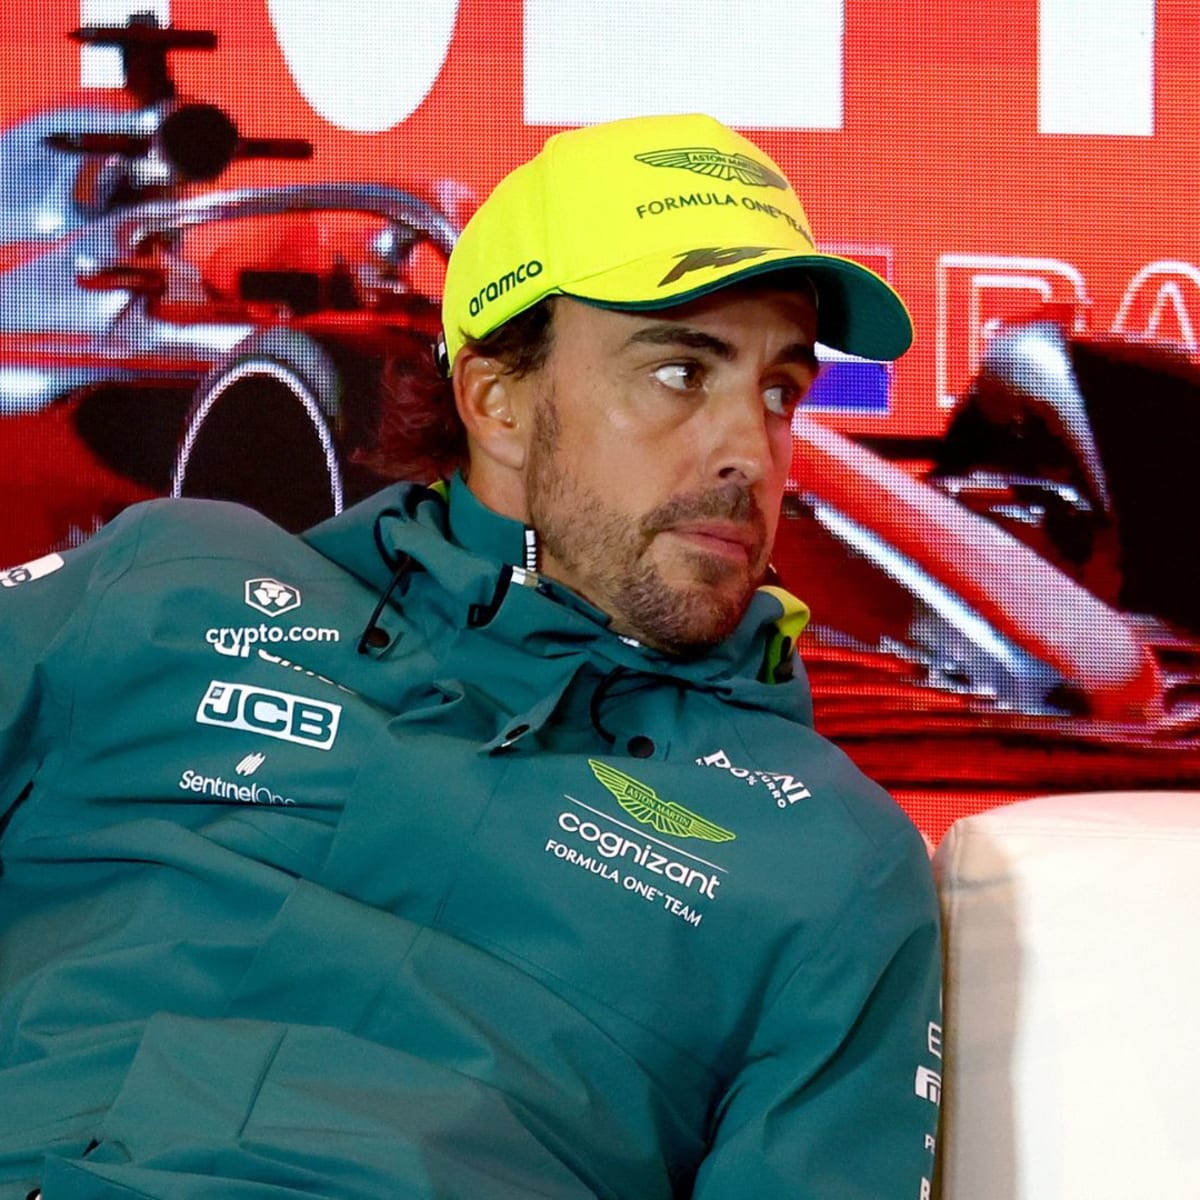 Fernando Alonso to join F1 team Aston Martin next season